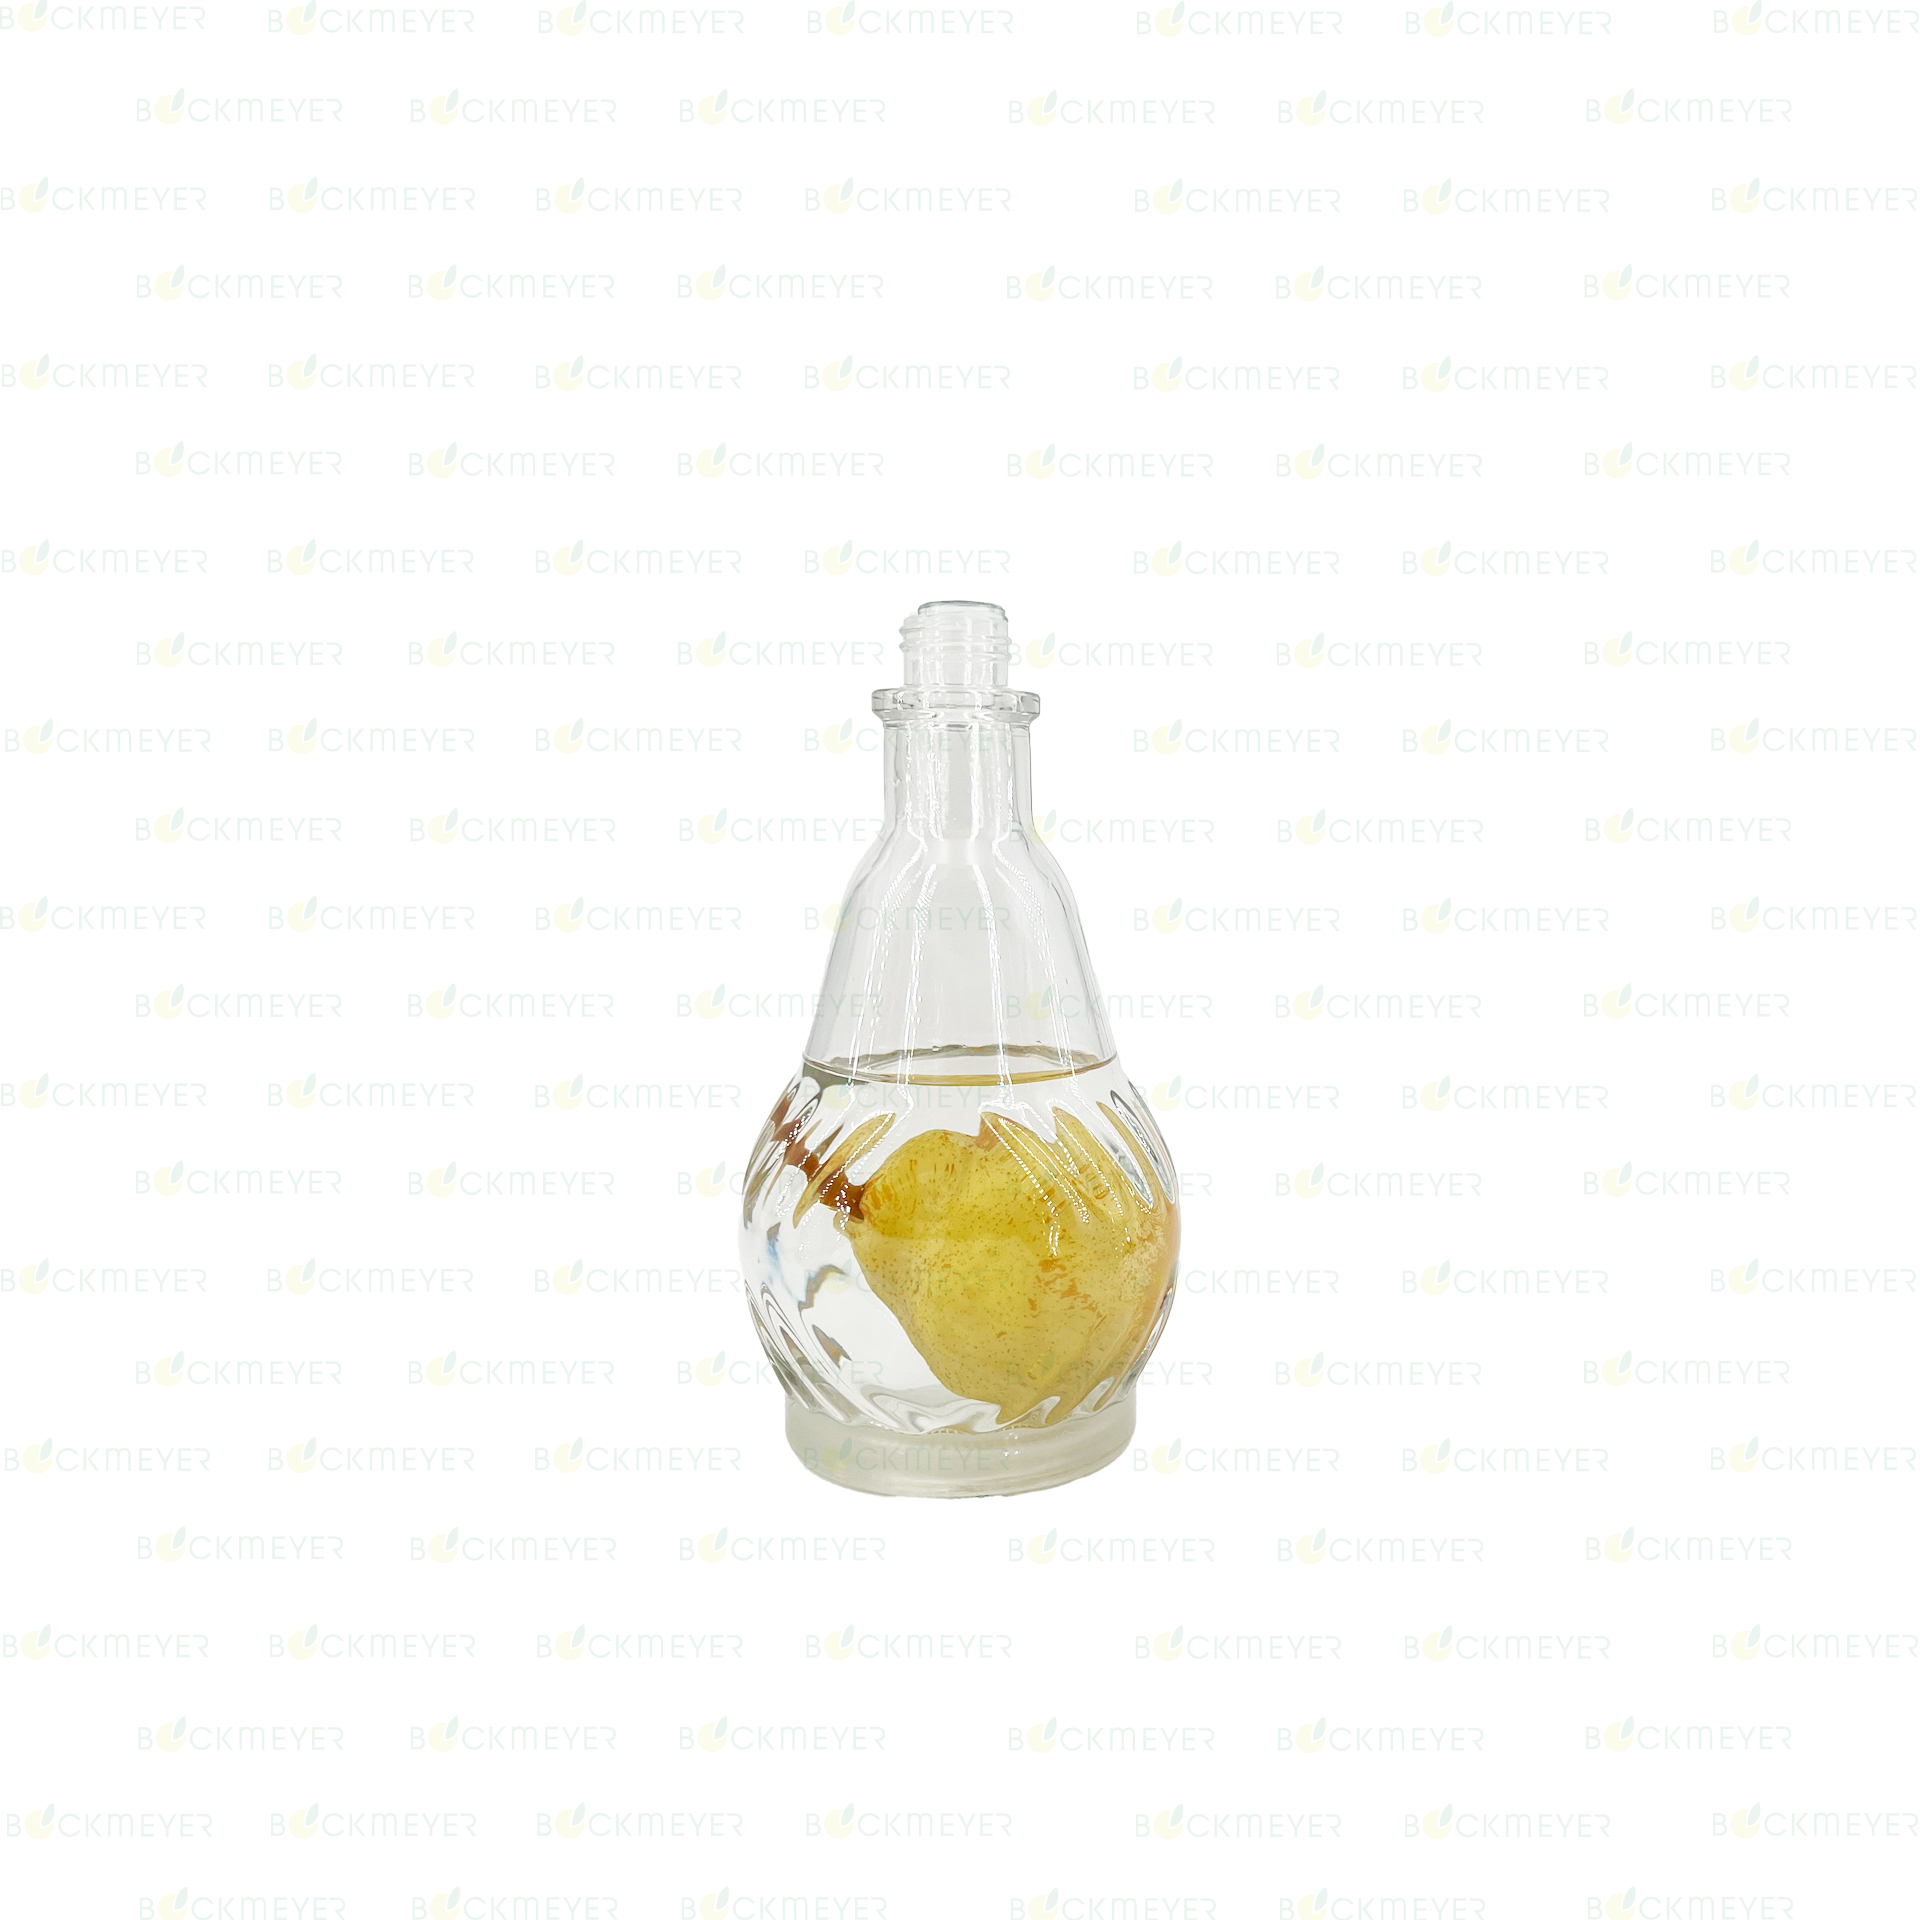 Williamsflasche/Karaffenform mit Frucht 0,7 Liter passender GlasstopfenArtikel 20305